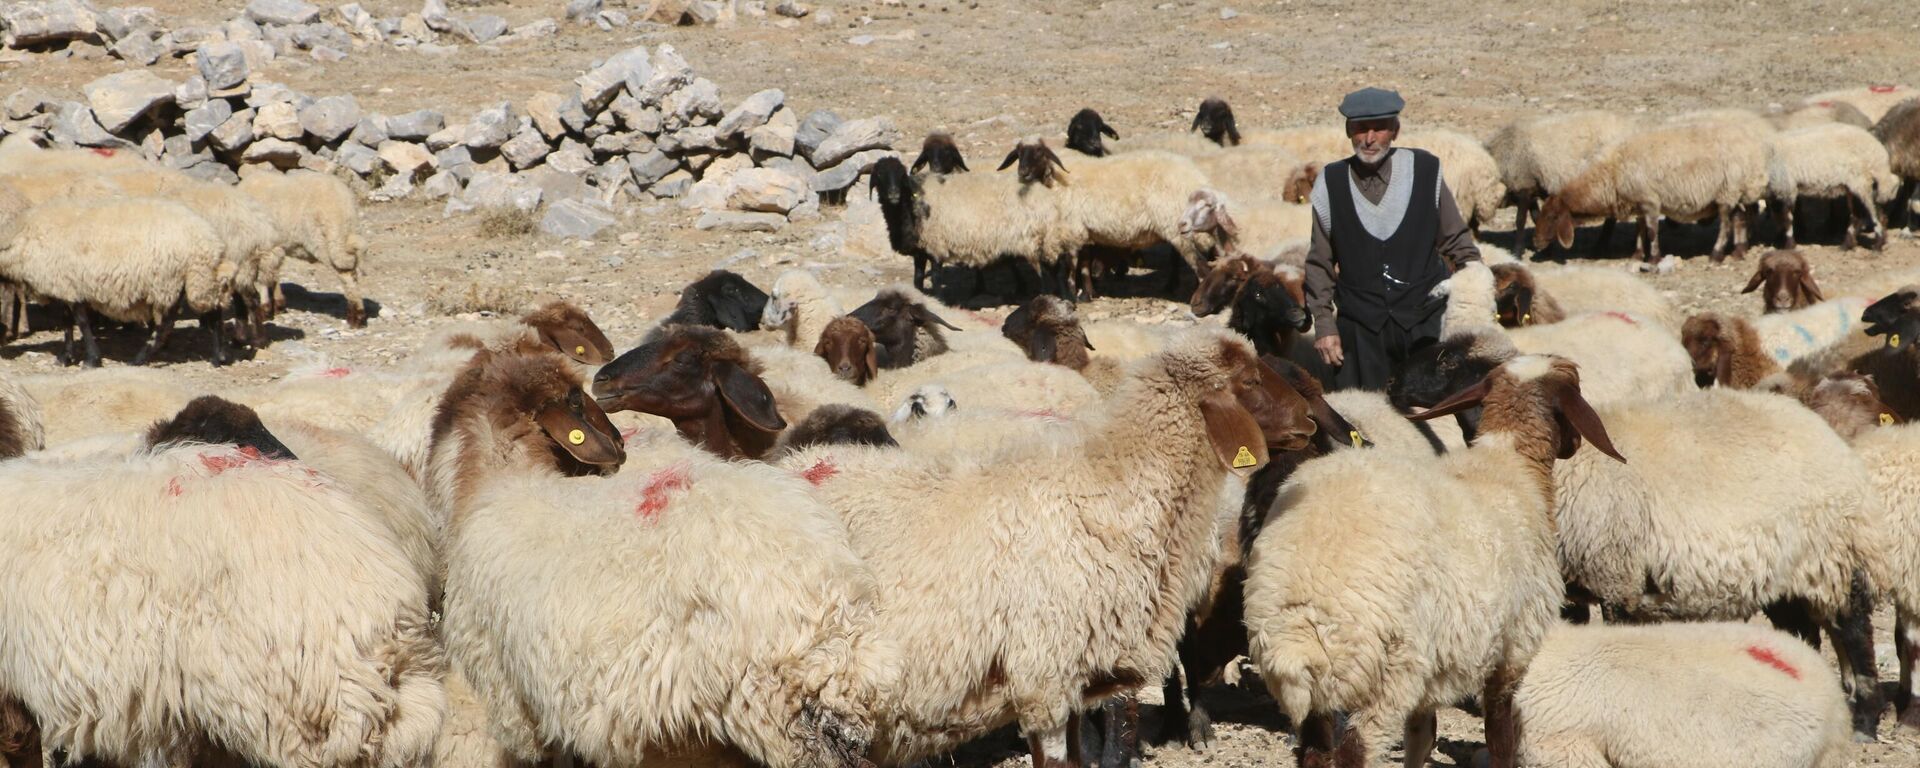 Türkiye ekonomisinin mihenk taşlarından olan tarım ve hayvancılık sektöründe son zamanlarda baş gösteren çoban sıkıntısı Malatya'da da sektörü olumsuz yönde etkiliyor.  - Sputnik Türkiye, 1920, 15.10.2021